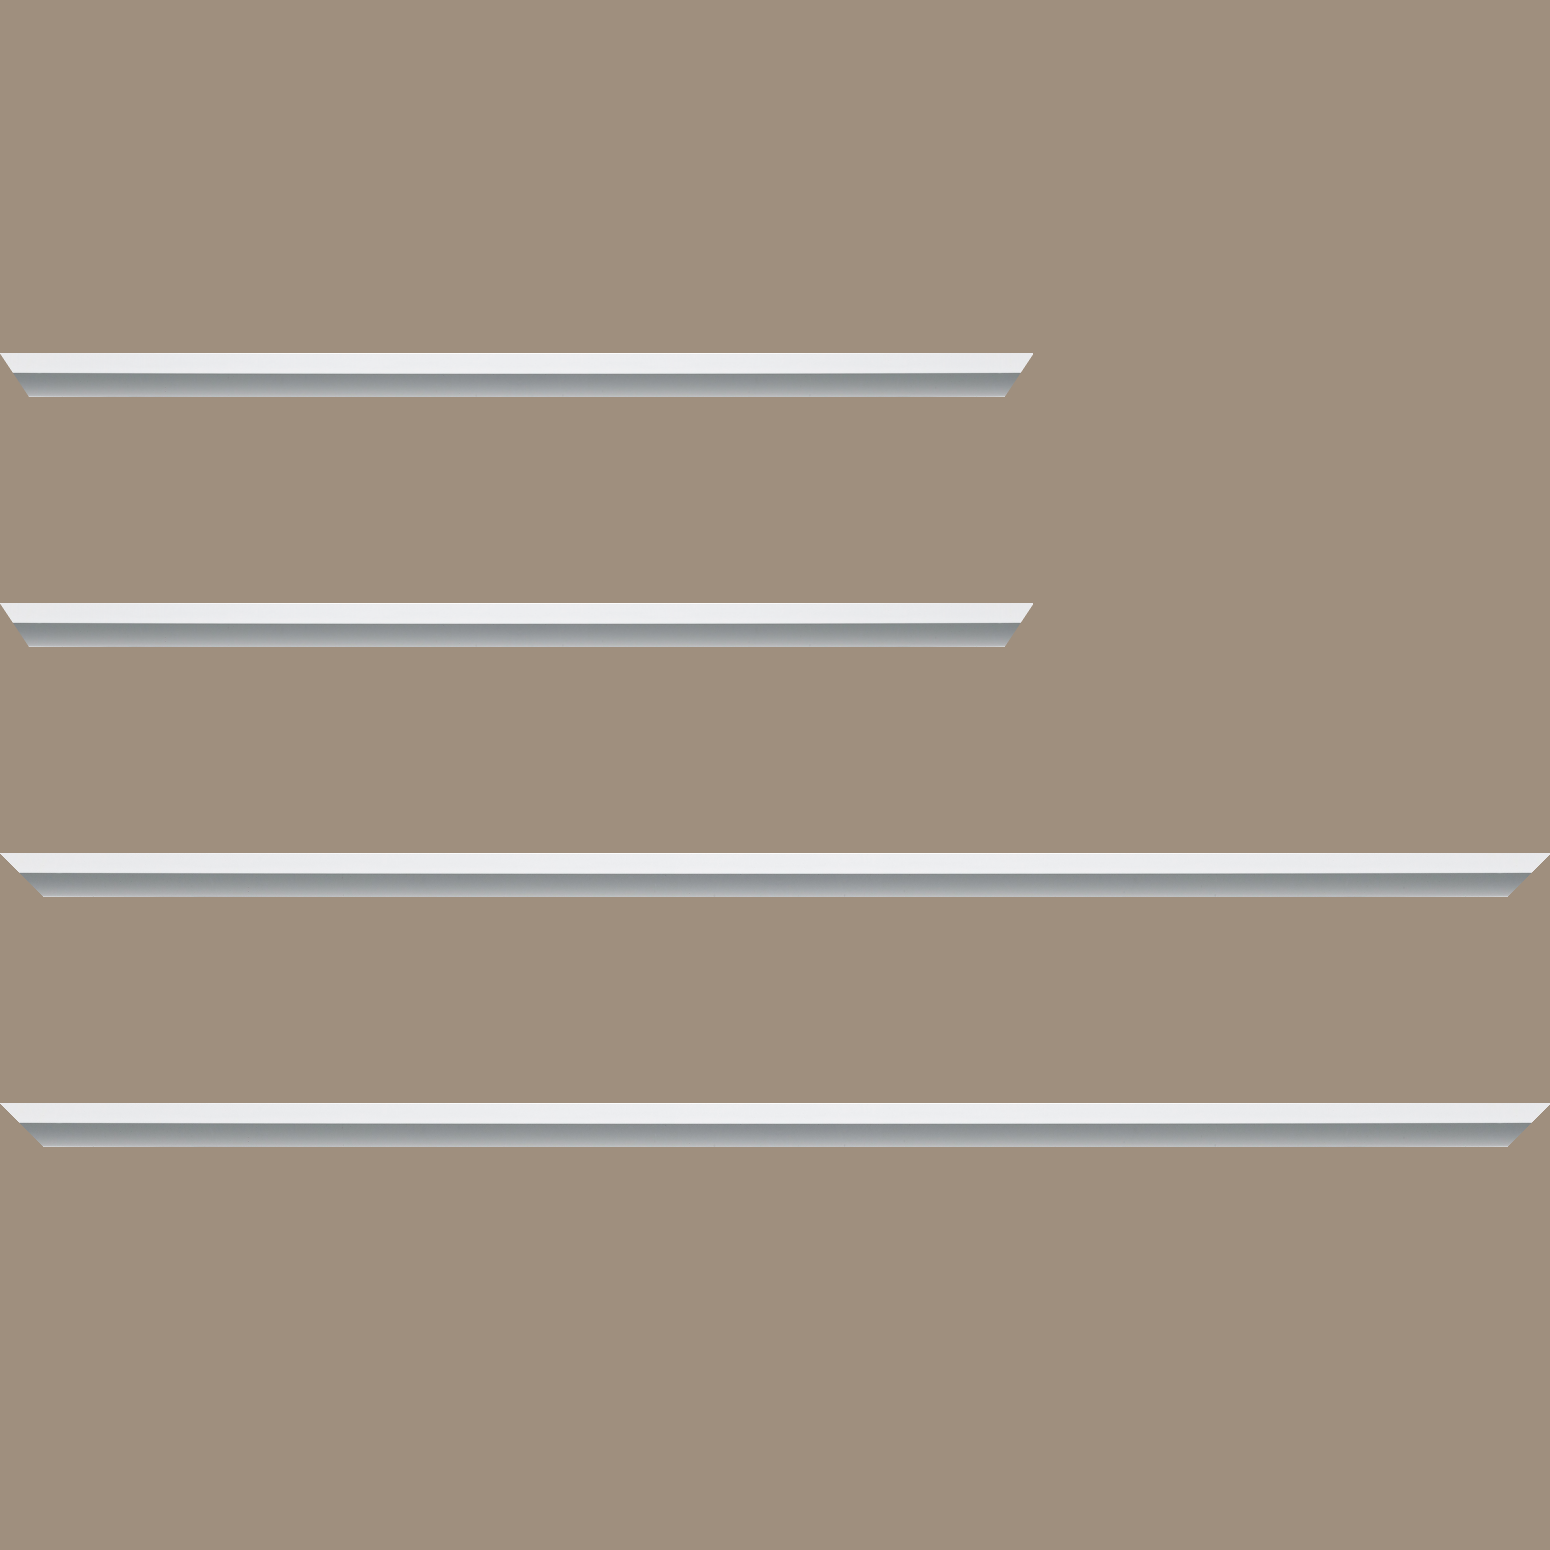 Baguette aluminium profil plat largeur 7mm, couleur blanc mat ,(le sujet qui sera glissé dans le cadre sera en retrait de 9mm de la face du cadre assurant un effet très contemporain) mise en place du sujet rapide et simple: assemblage du cadre par double équerre à vis (livré avec le système d'accrochage qui se glisse dans le profilé) encadrement non assemblé,  livré avec son sachet d'accessoires - 40x60